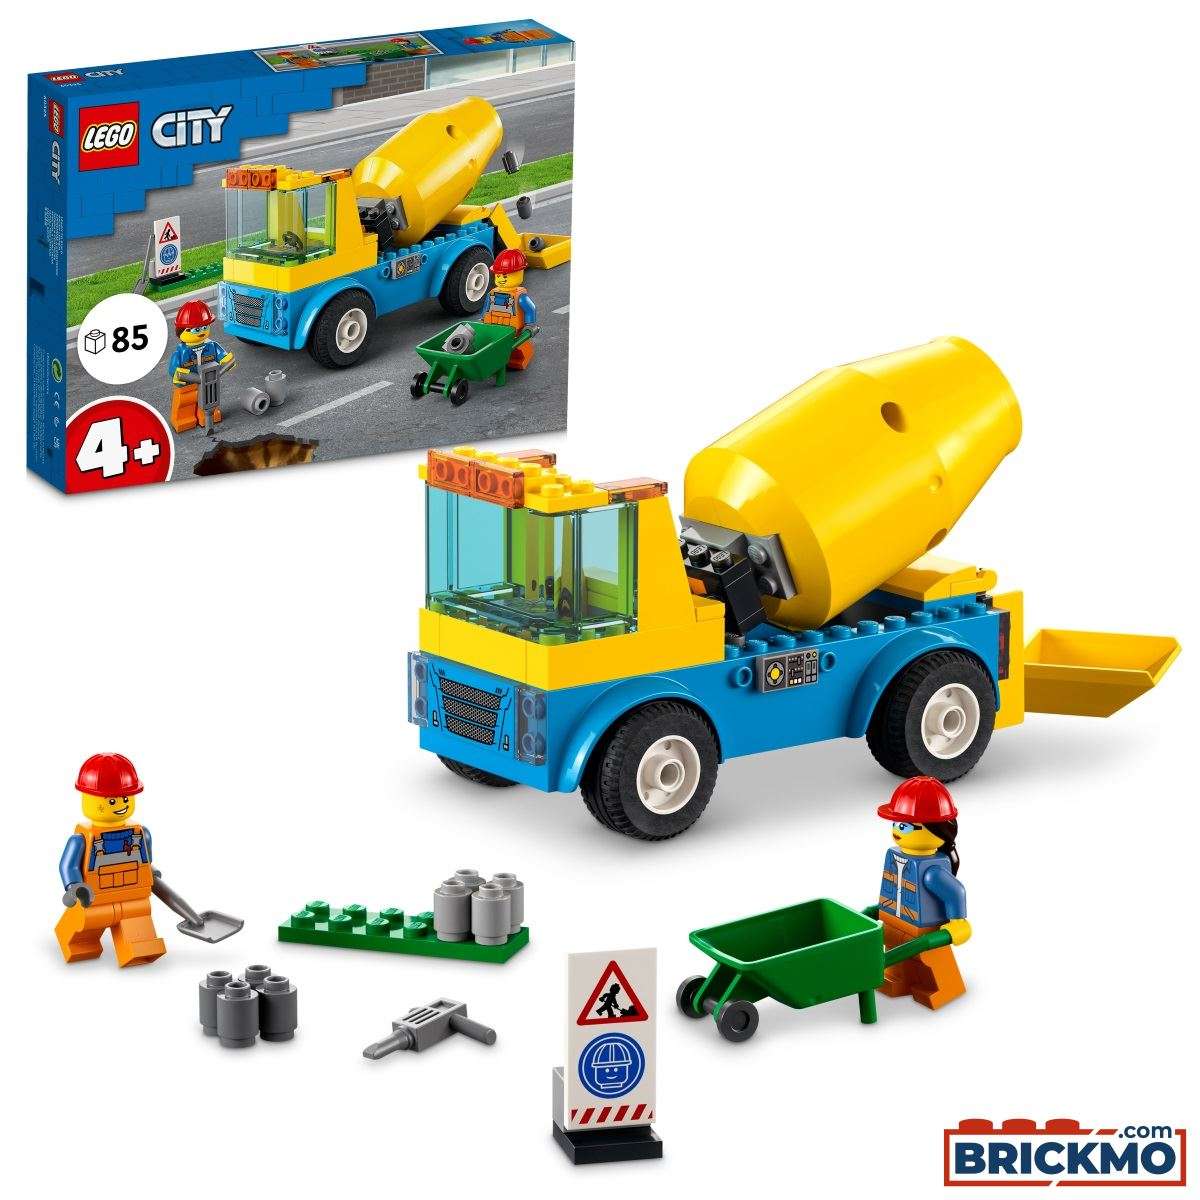 LEGO City 60325 Betonmischer 60325